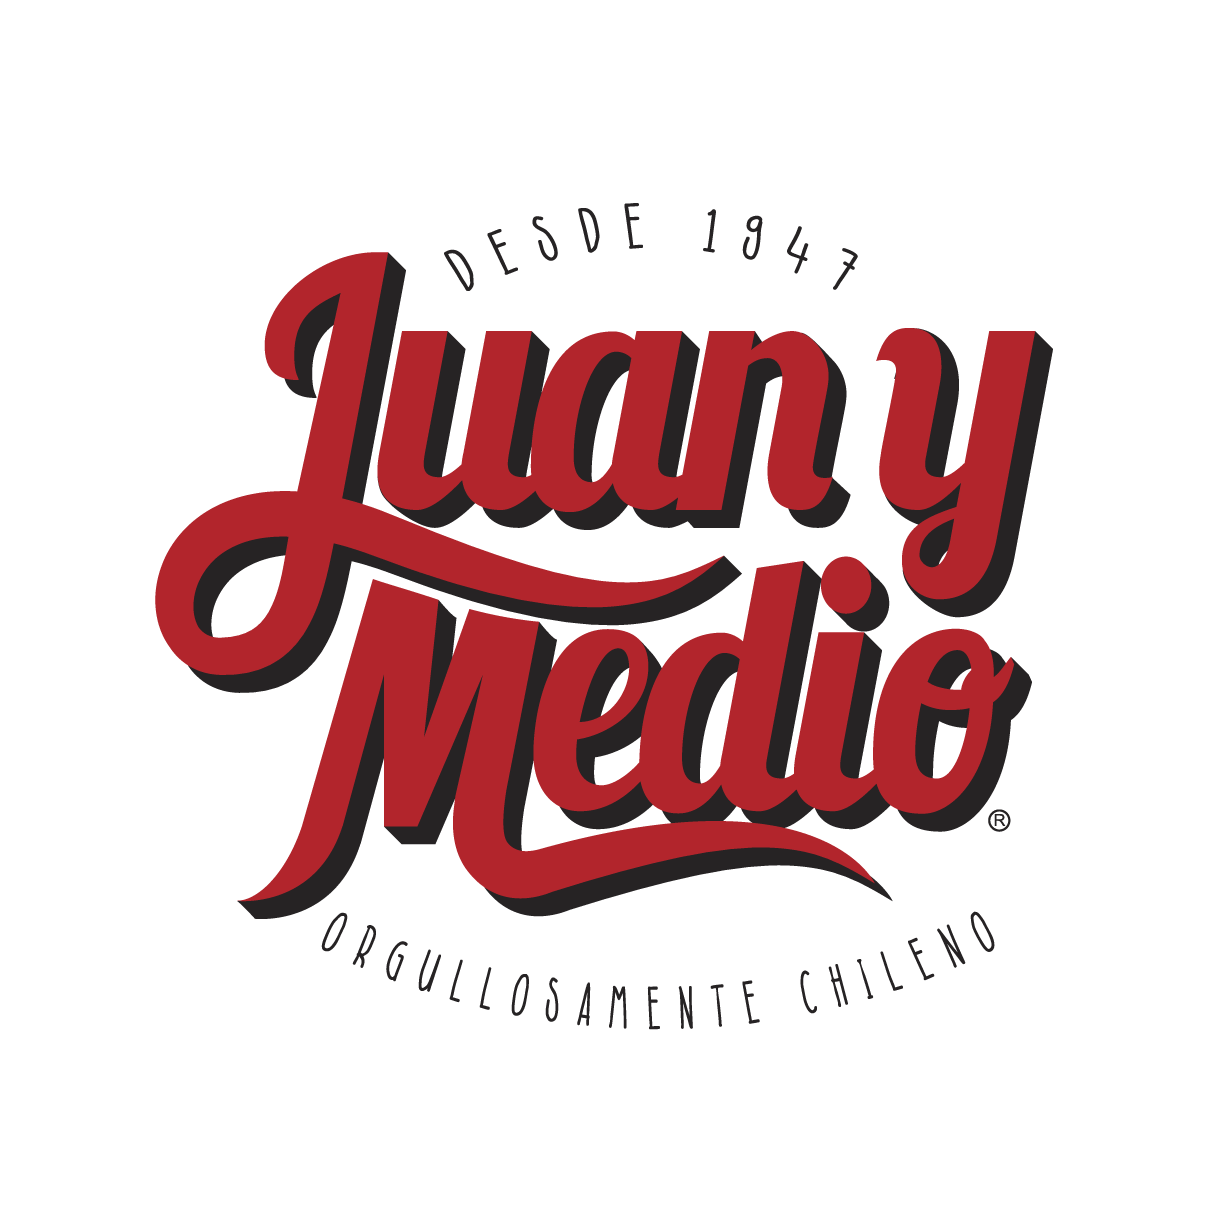 Restaurante Juan y Medio